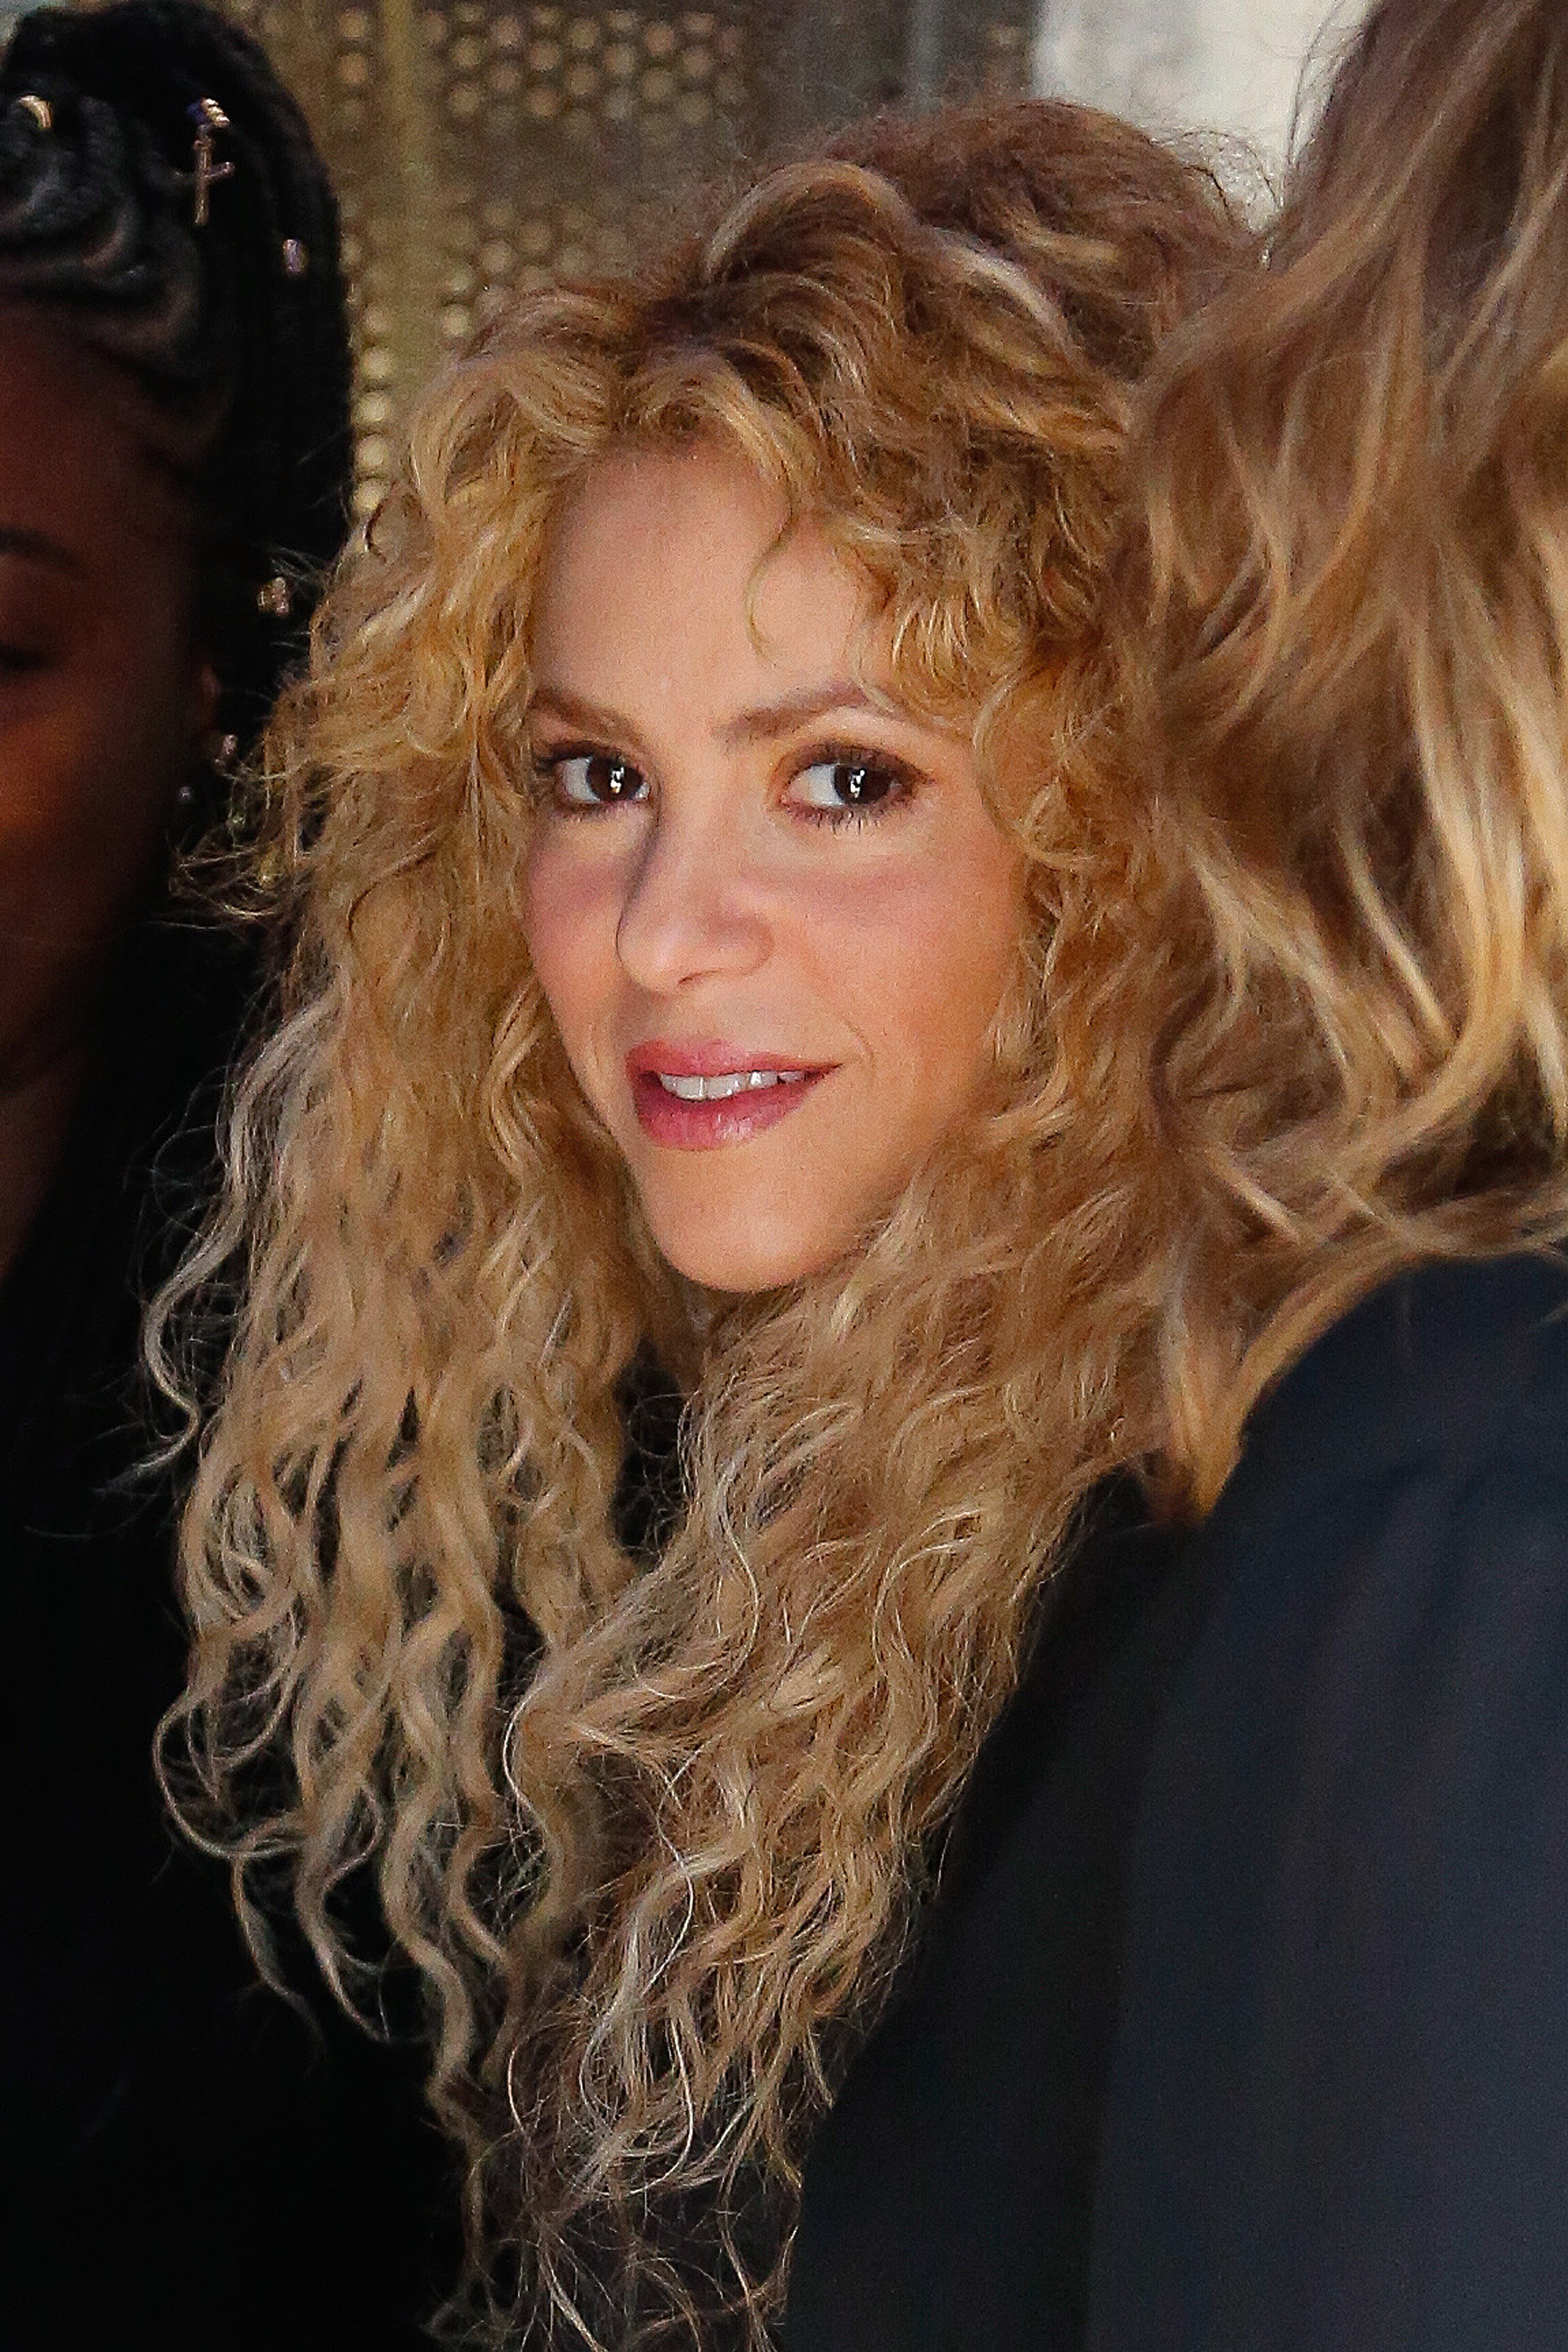 Shakira al natural, sin maquillar ni peinar en una playa de Sitges en  invierno